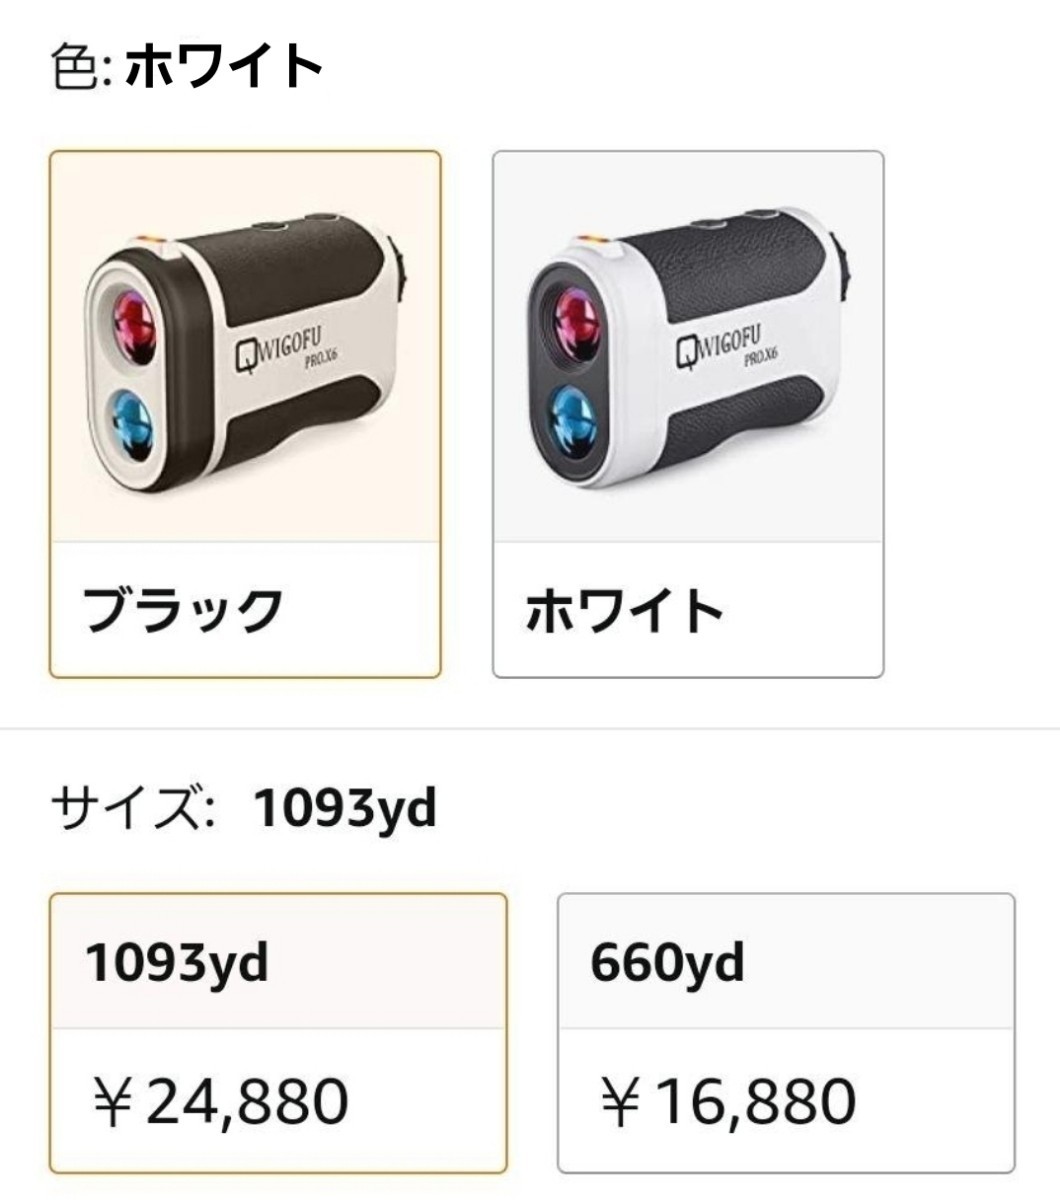 宅送] ✨ゴルフ 距離計 レーザー距離計✨USB充電式 最大660yd 日本語